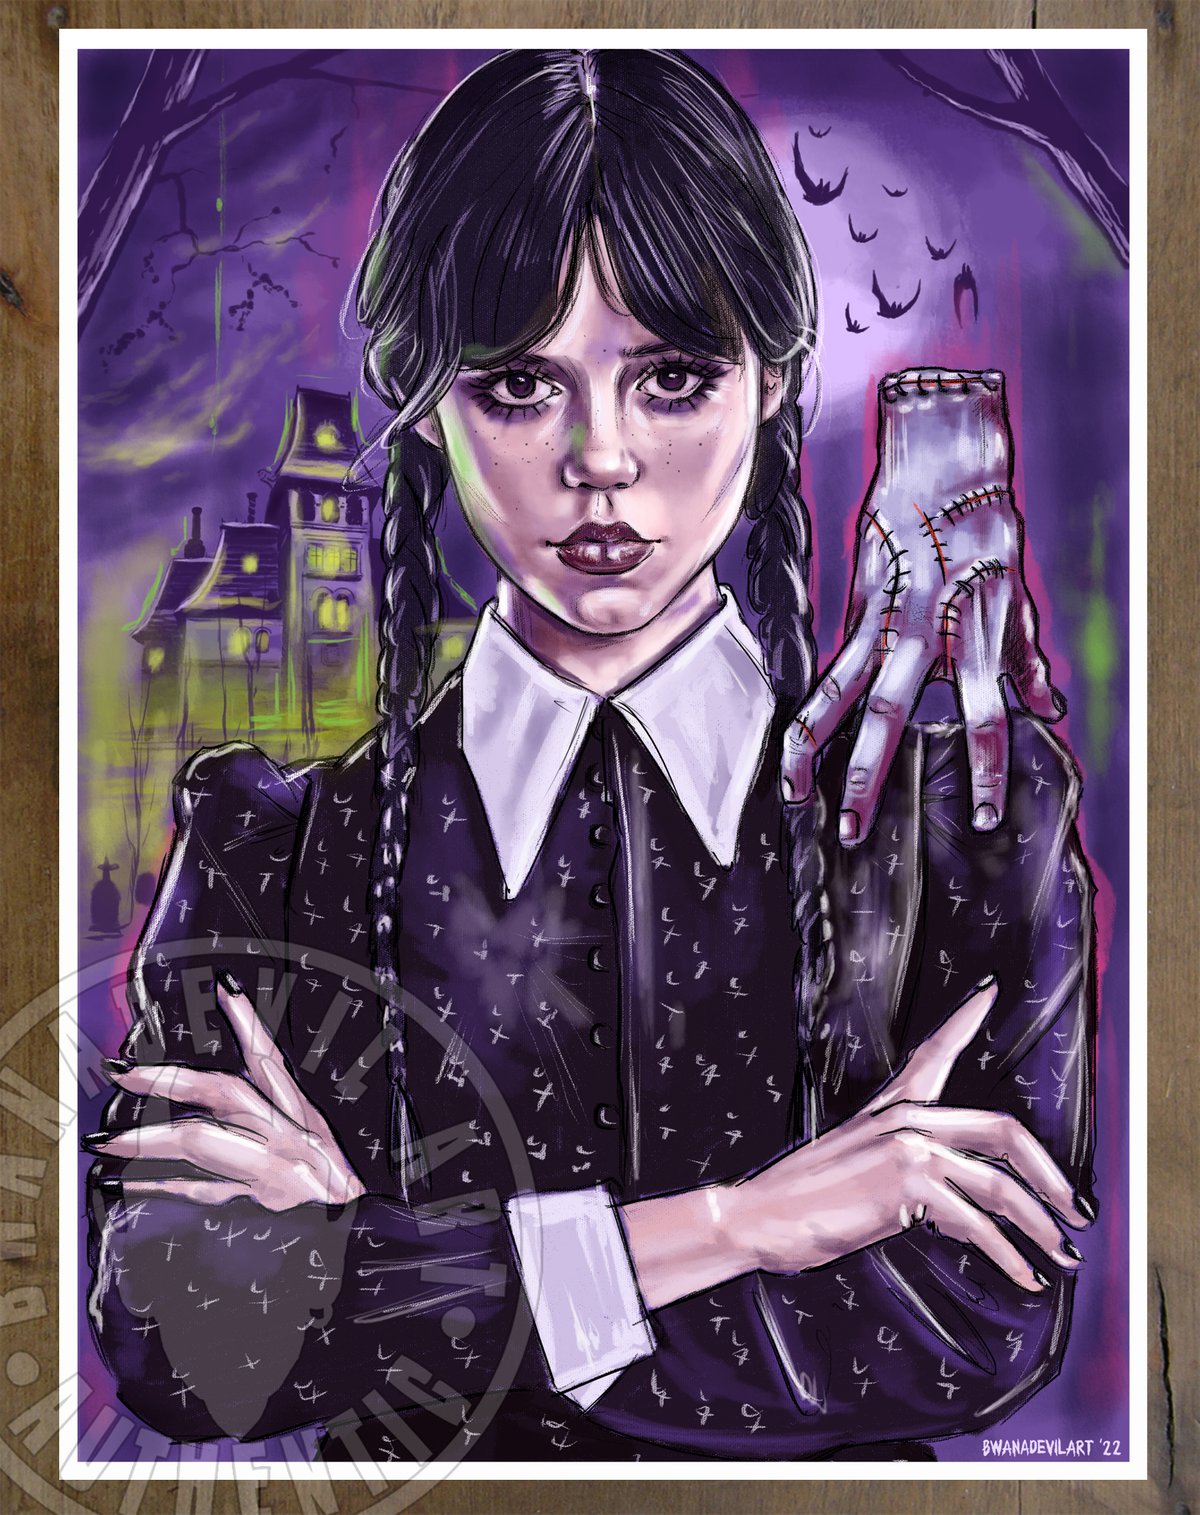 Wednesday Addams (Jenna Ortega) 9x12 in. Art Prints | BwanaDevilArt